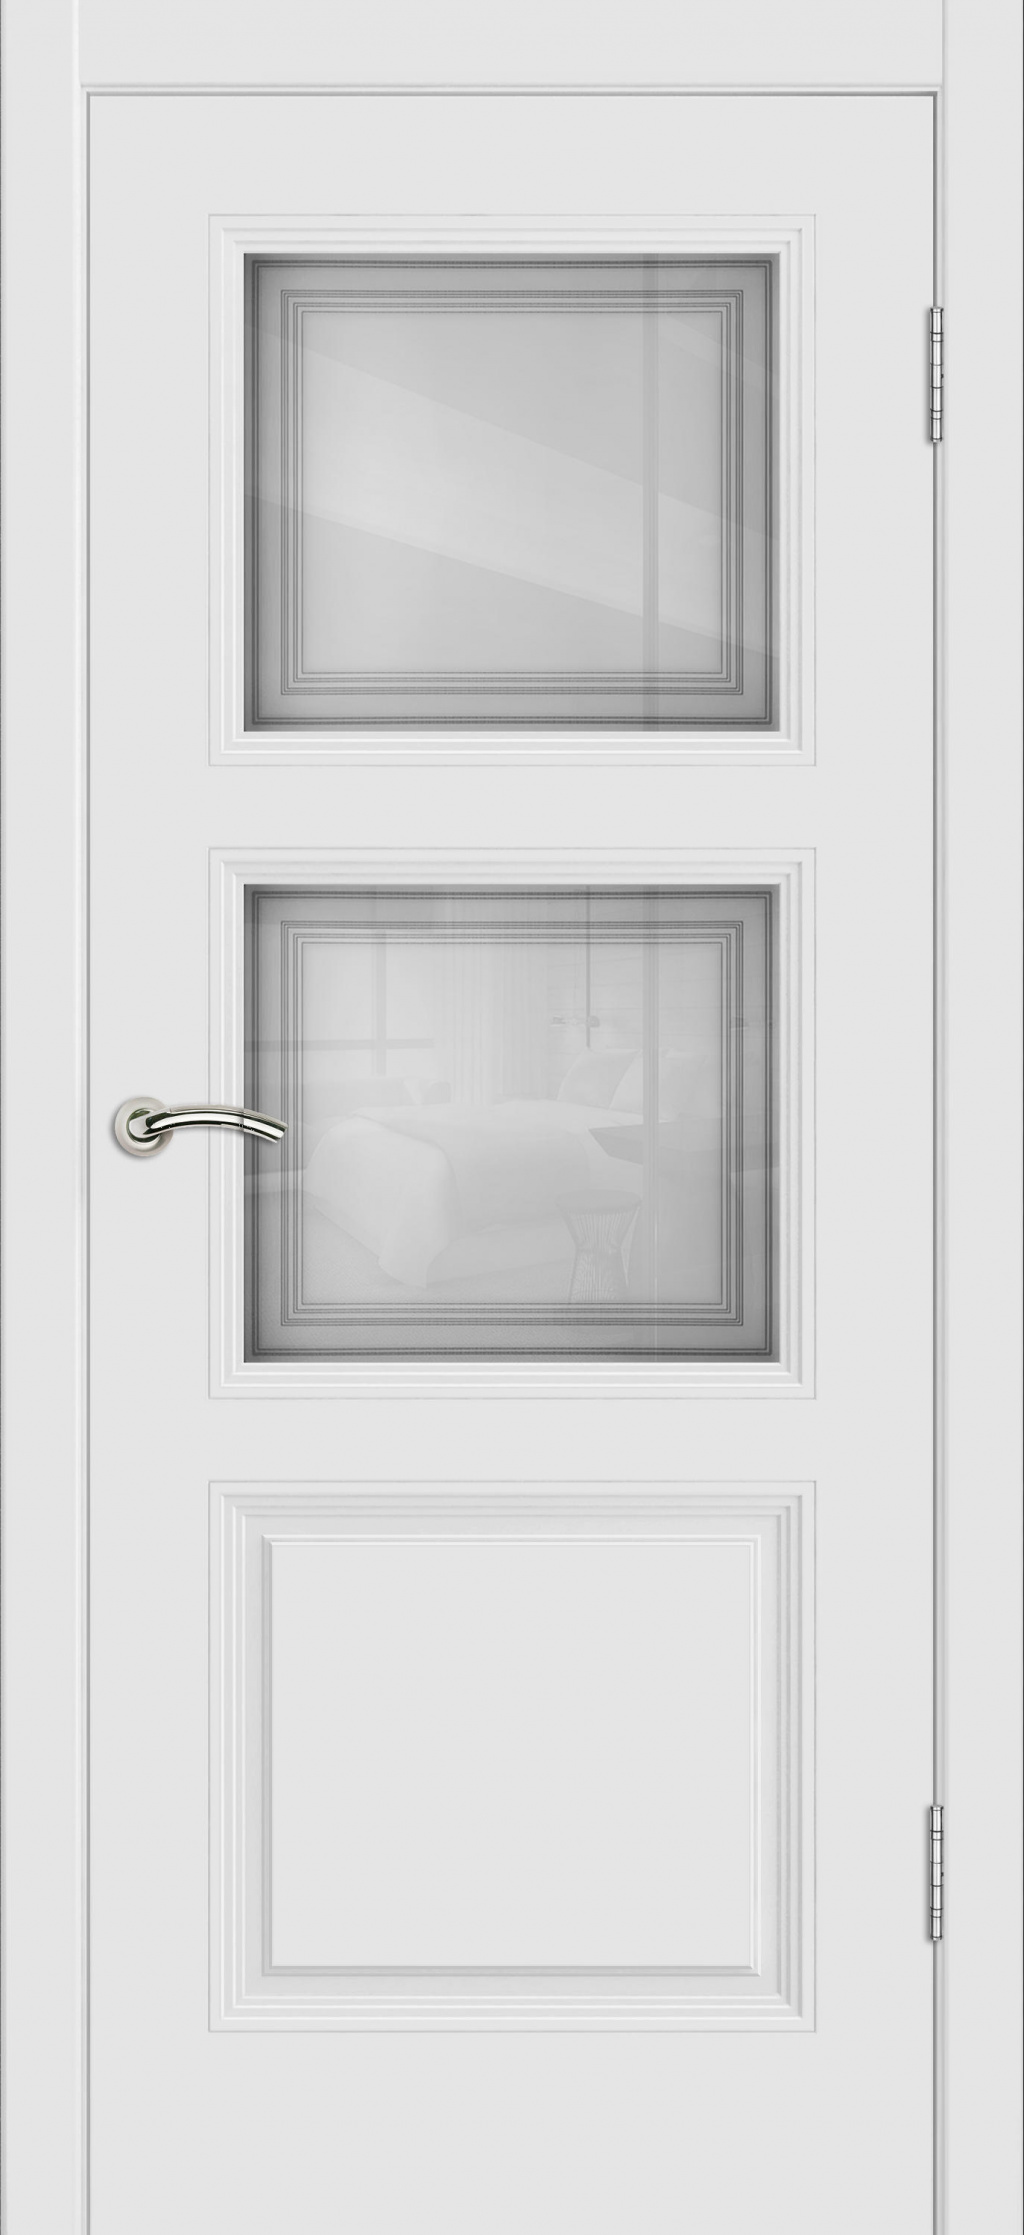 Cordondoor Межкомнатная дверь Vision 3 ПО Узор 1-2, арт. 19310 - фото №2